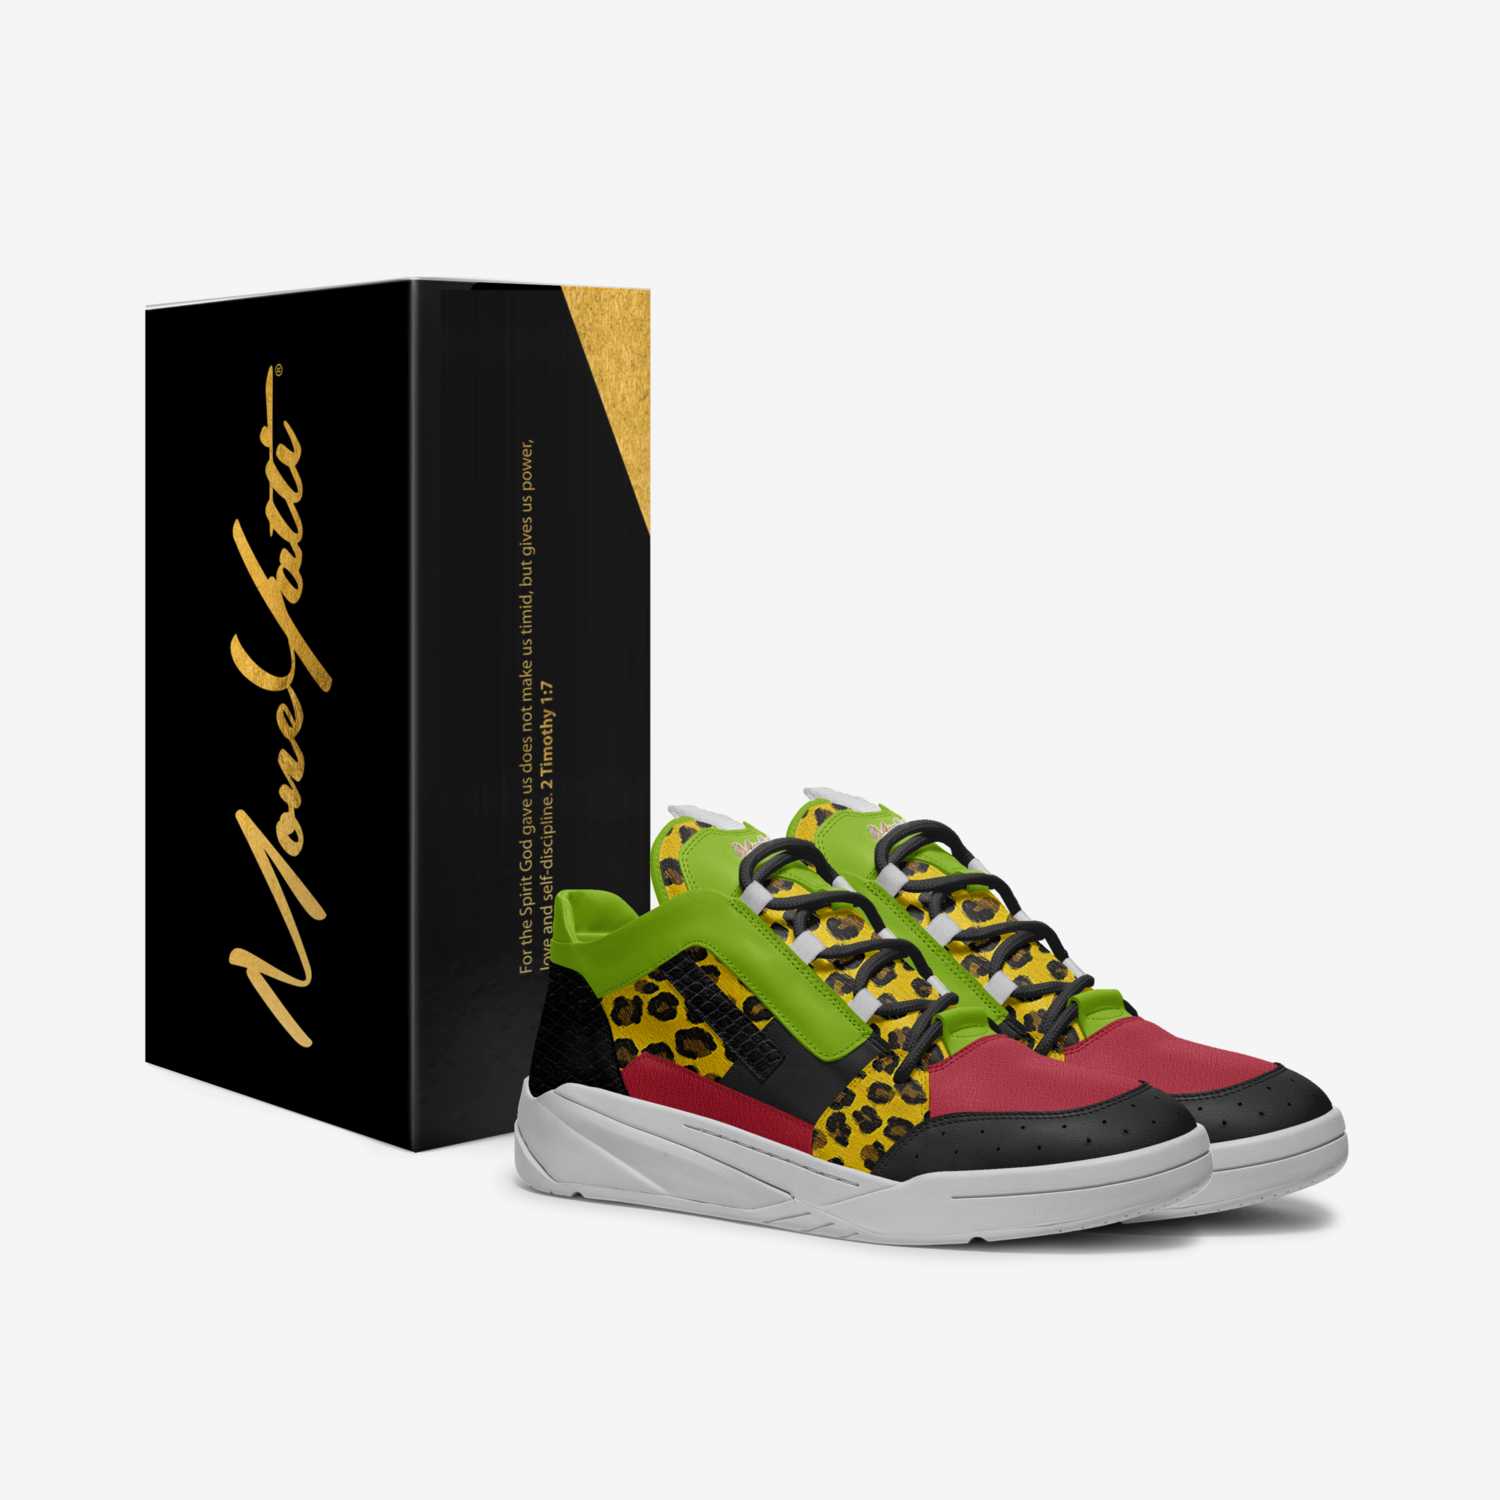 MONEYATTI TURBO P2 custom made in Italy shoes by Moneyatti Brand | Box view